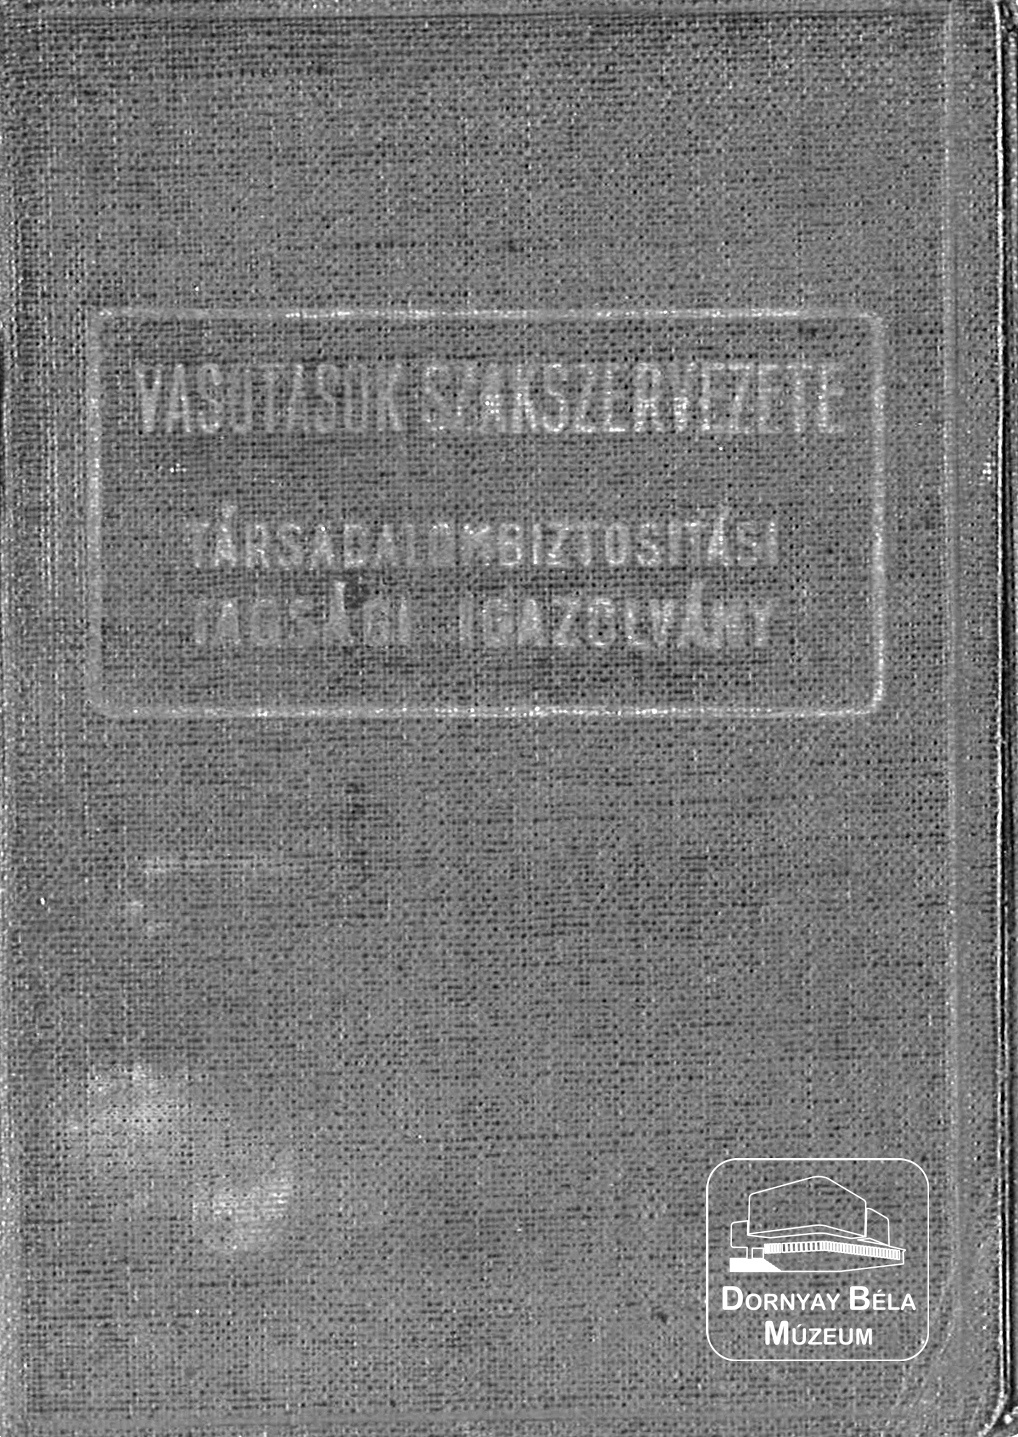 Klinecz Dezső MÁV alkalmazott TB igazolványa (Dornyay Béla Múzeum, Salgótarján CC BY-NC-SA)